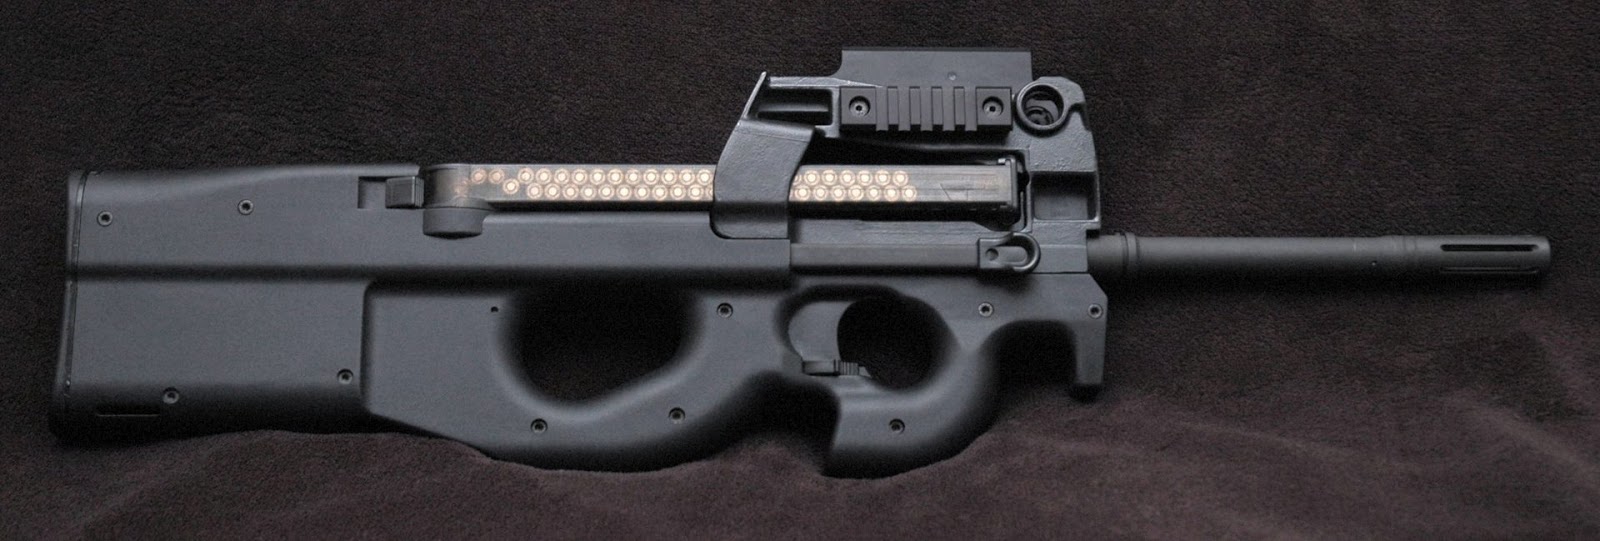 SI VIS PACEM, PARA BELLUM: L'FN P90 è un'arma da difesa personale